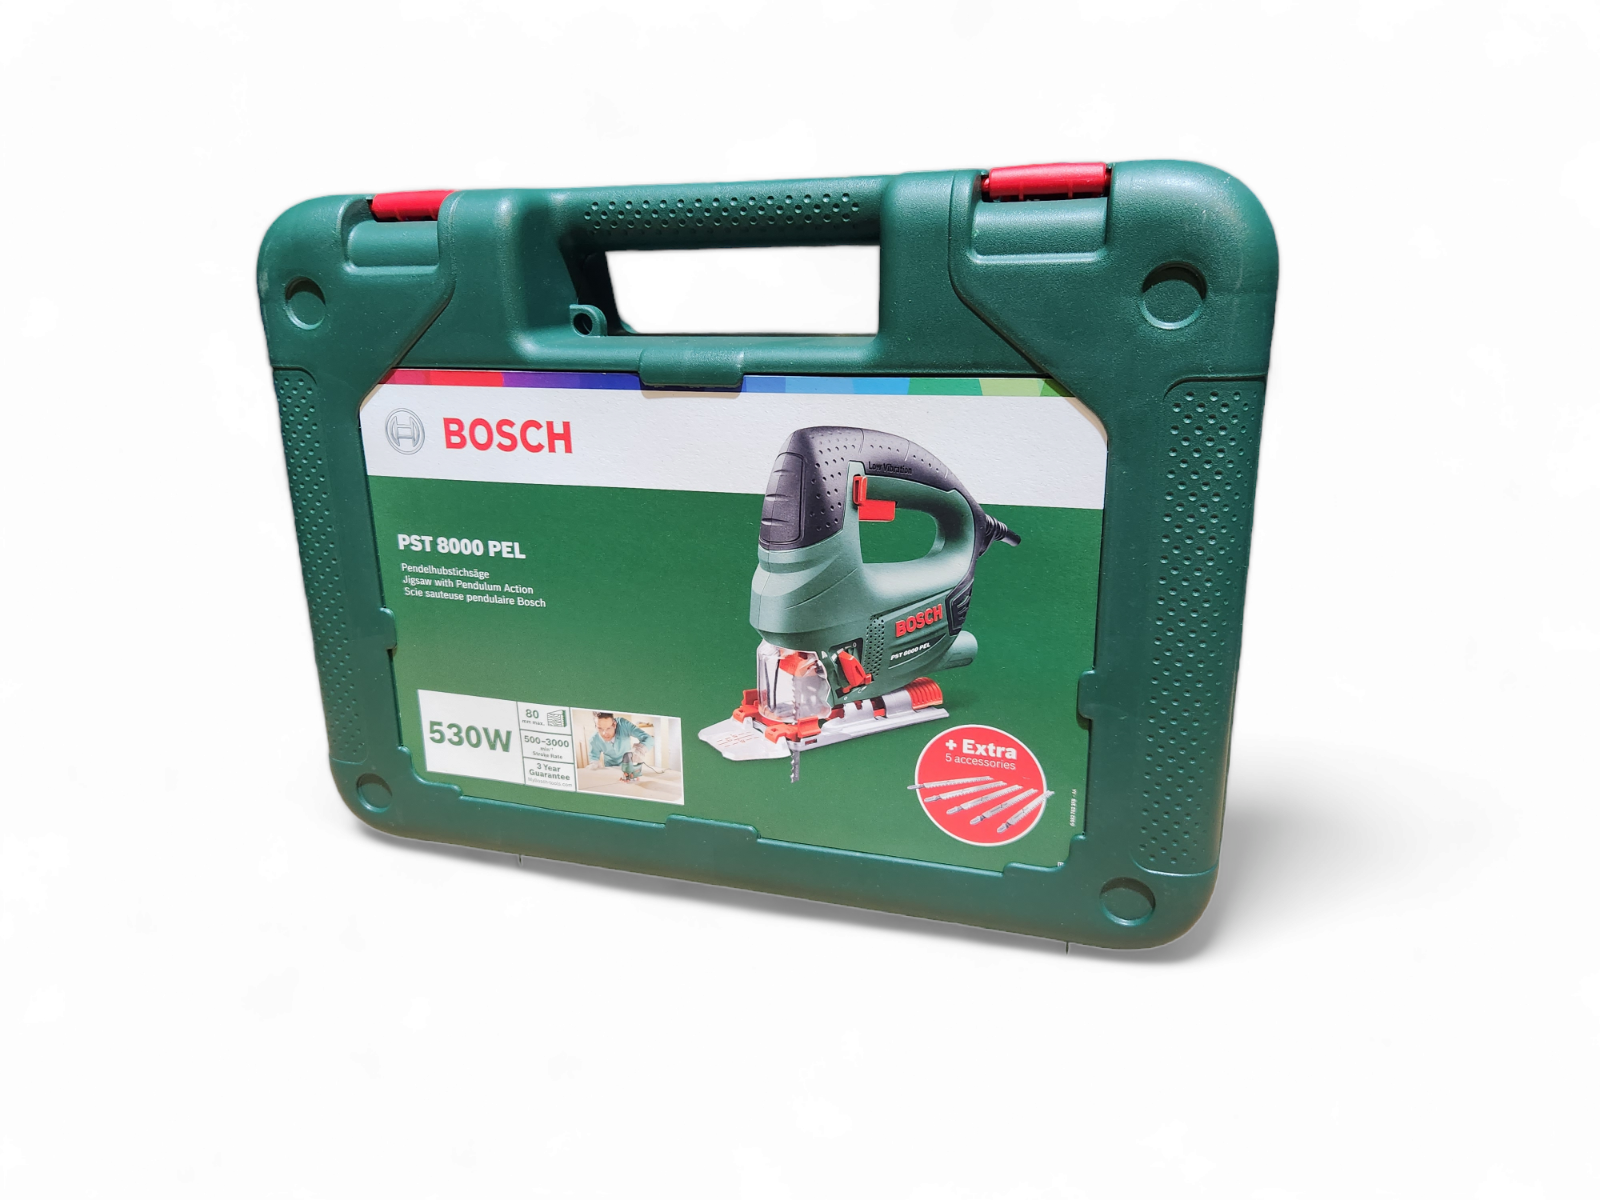 Bosch Stichsäge PST 8000 PEL im Koffer